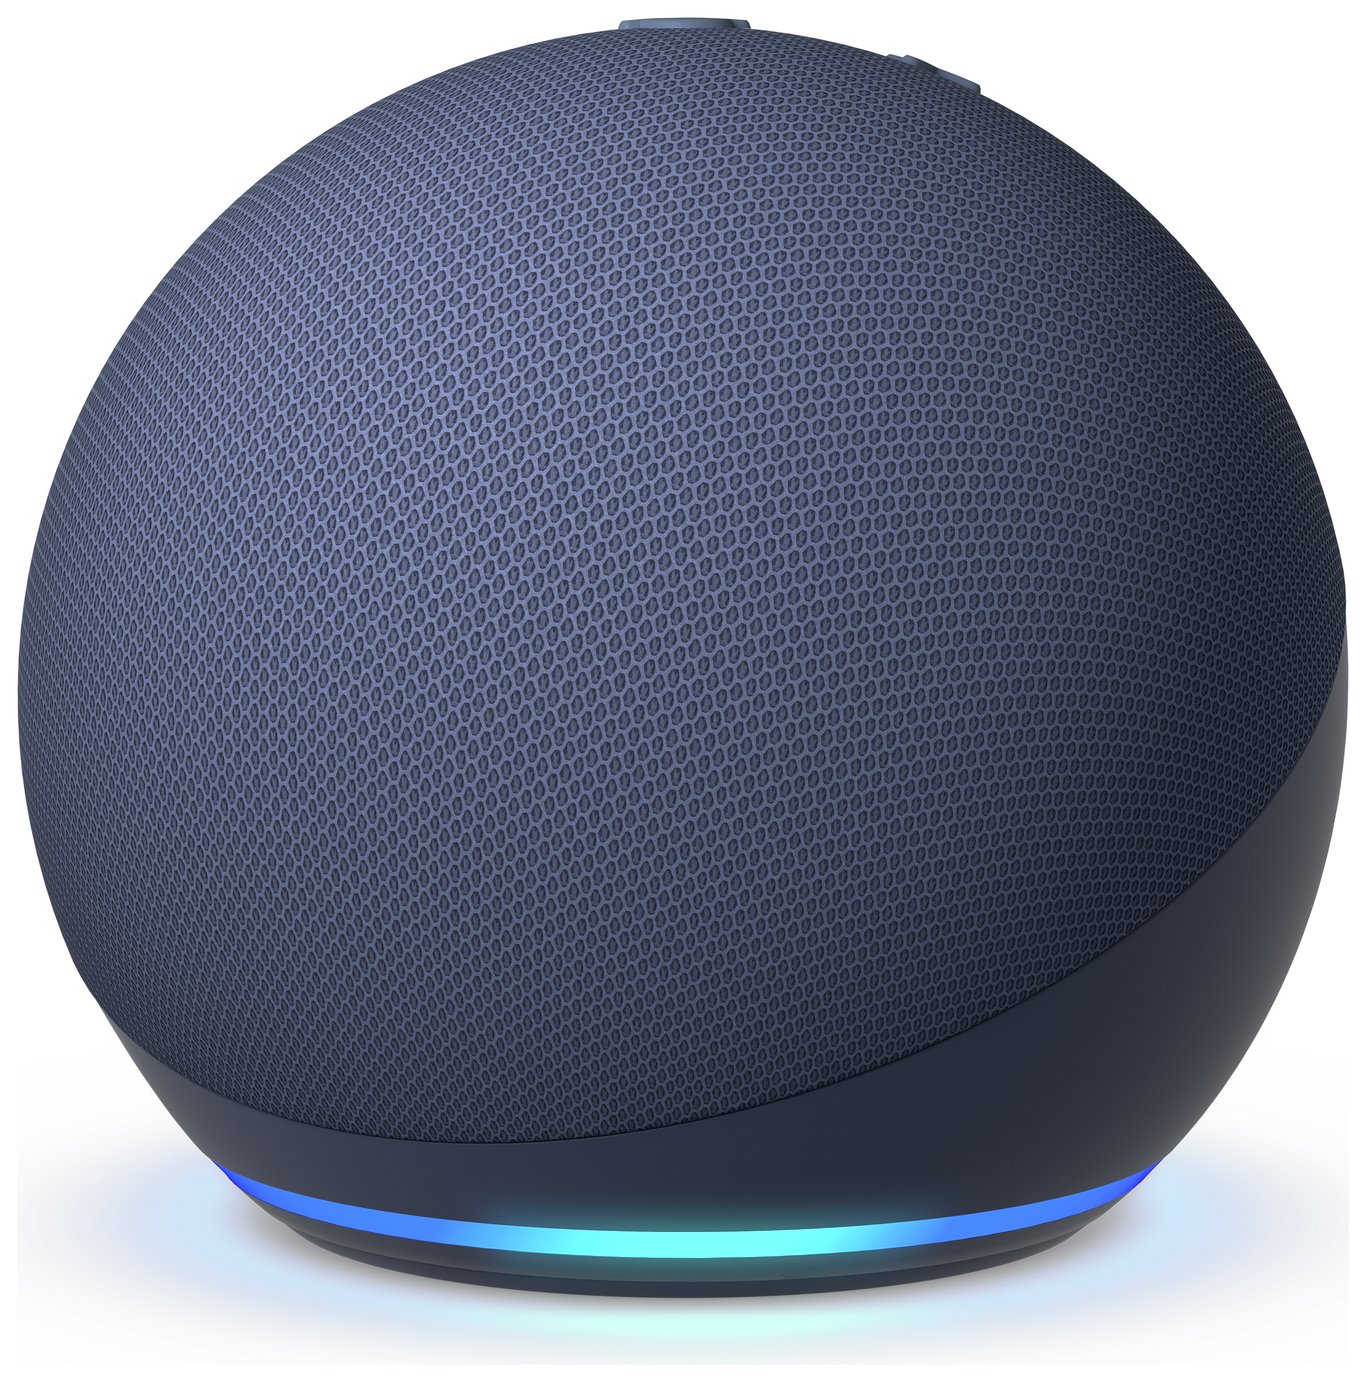 Amazon Echo Dot 5th Gen Smart Speaker With Alexa - Blue